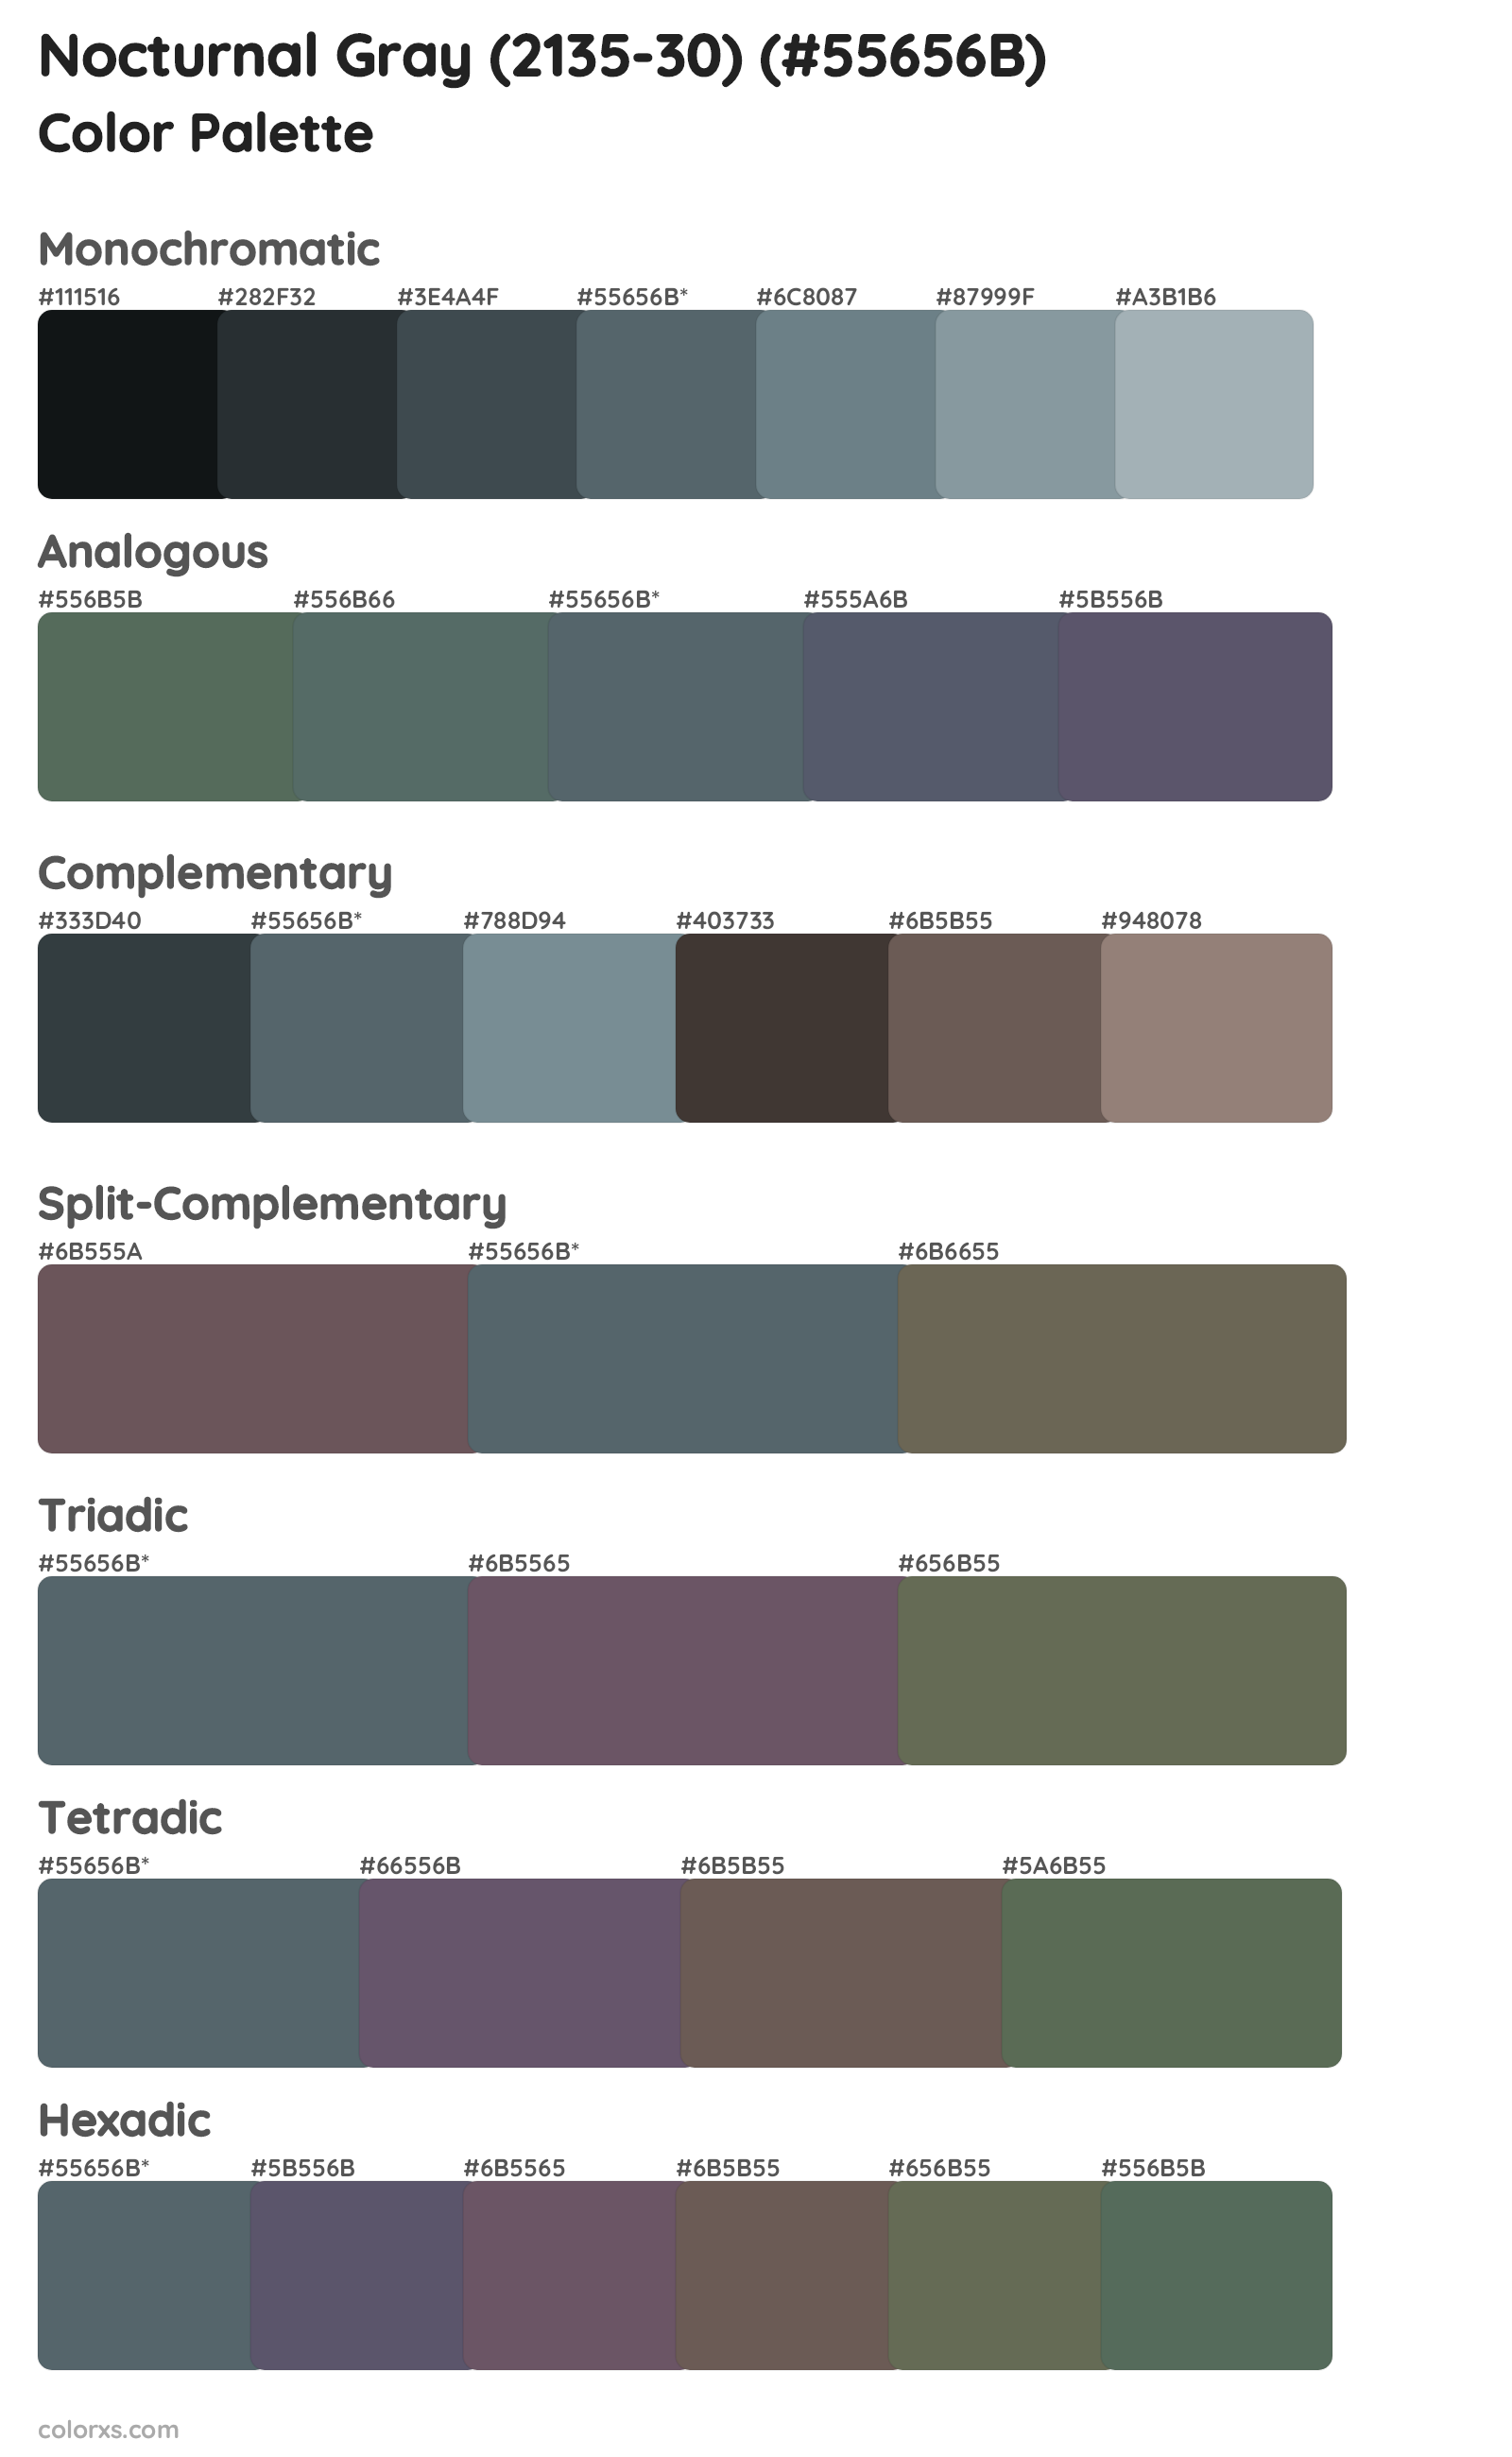 Nocturnal Gray (2135-30) Color Scheme Palettes